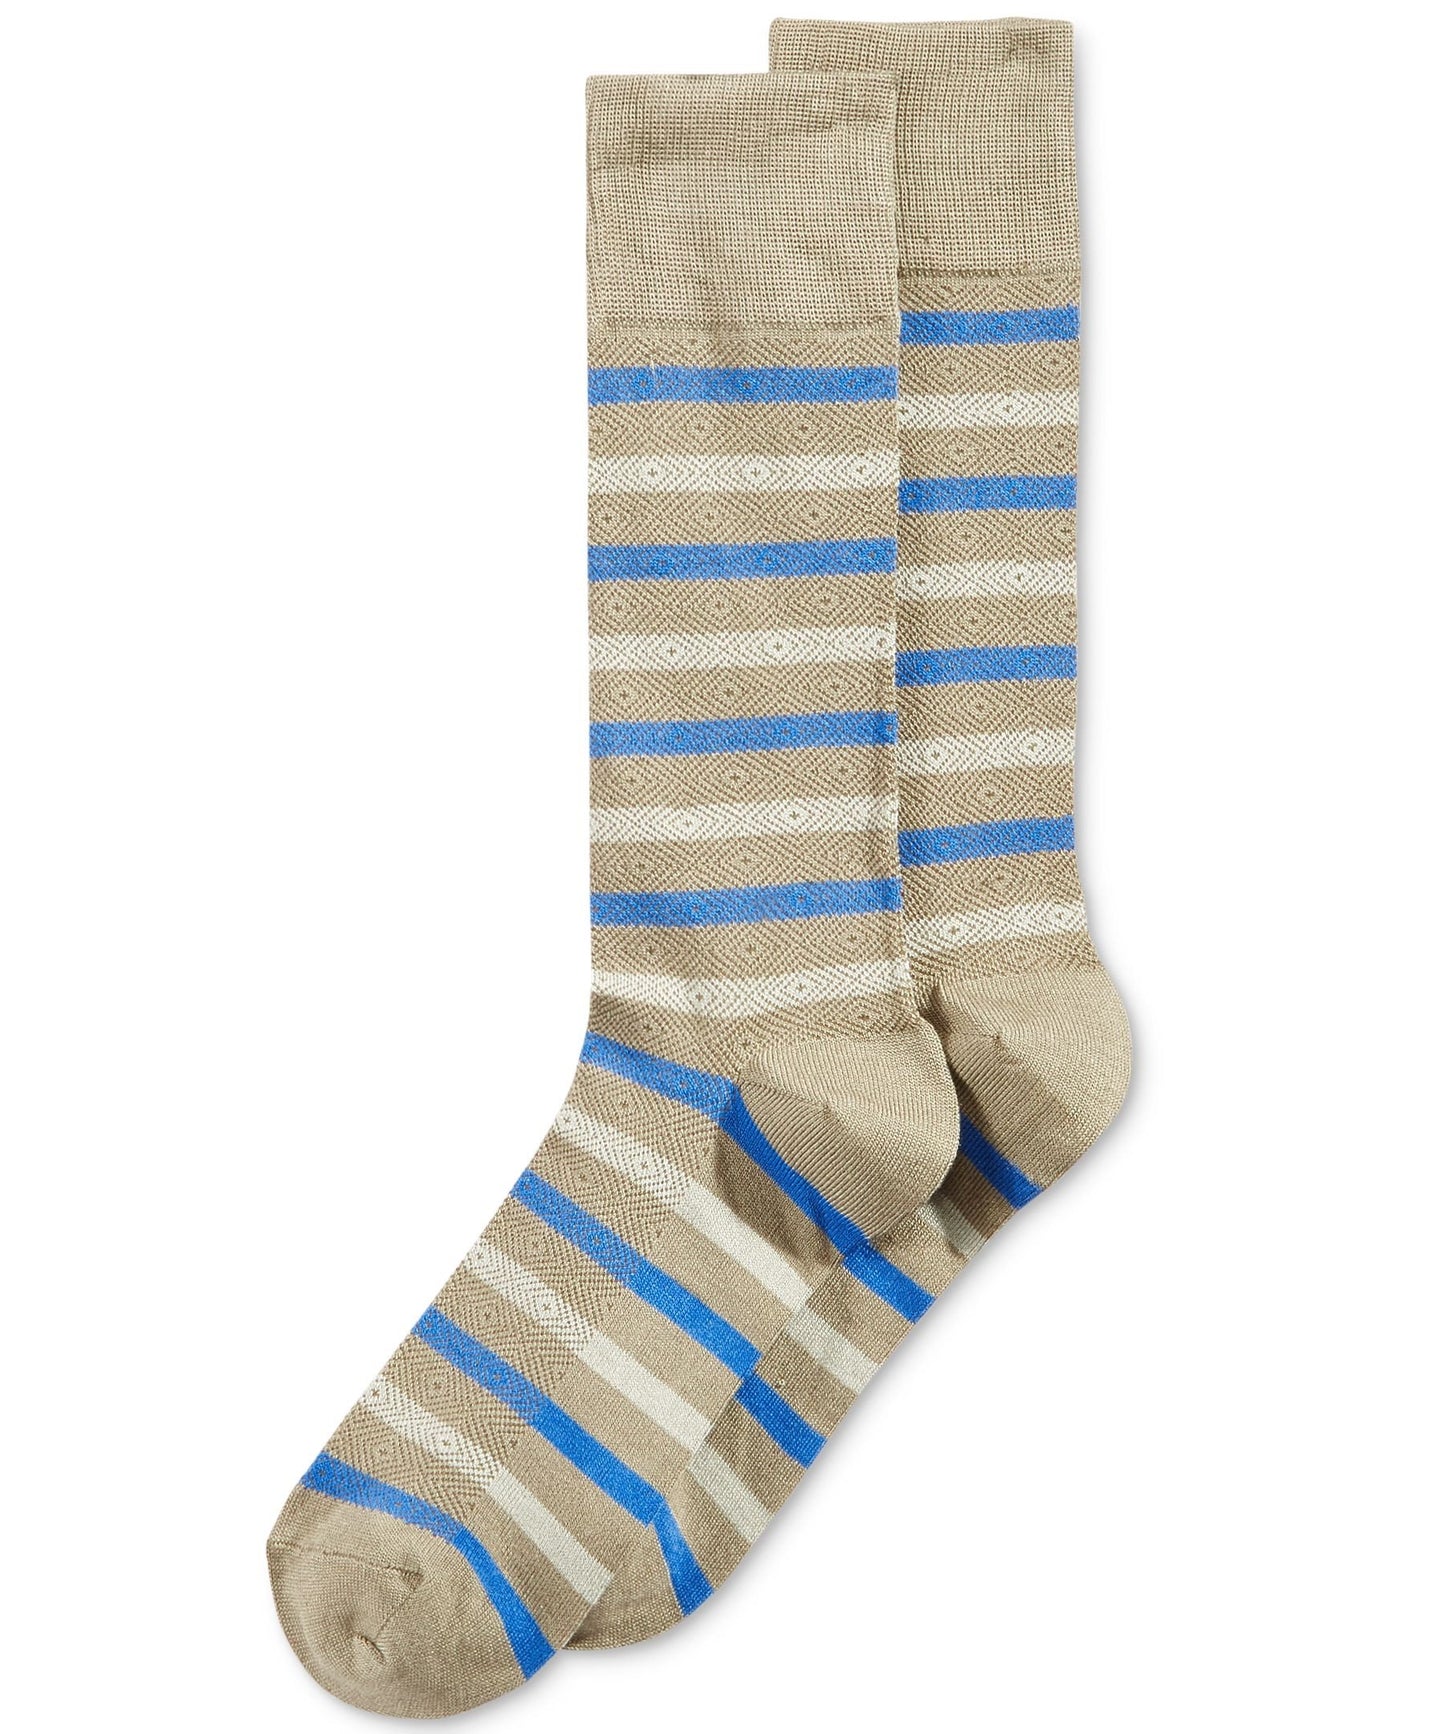 Perry Ellis Printed Striped Dress Socks Tan Brown Blue 7-12